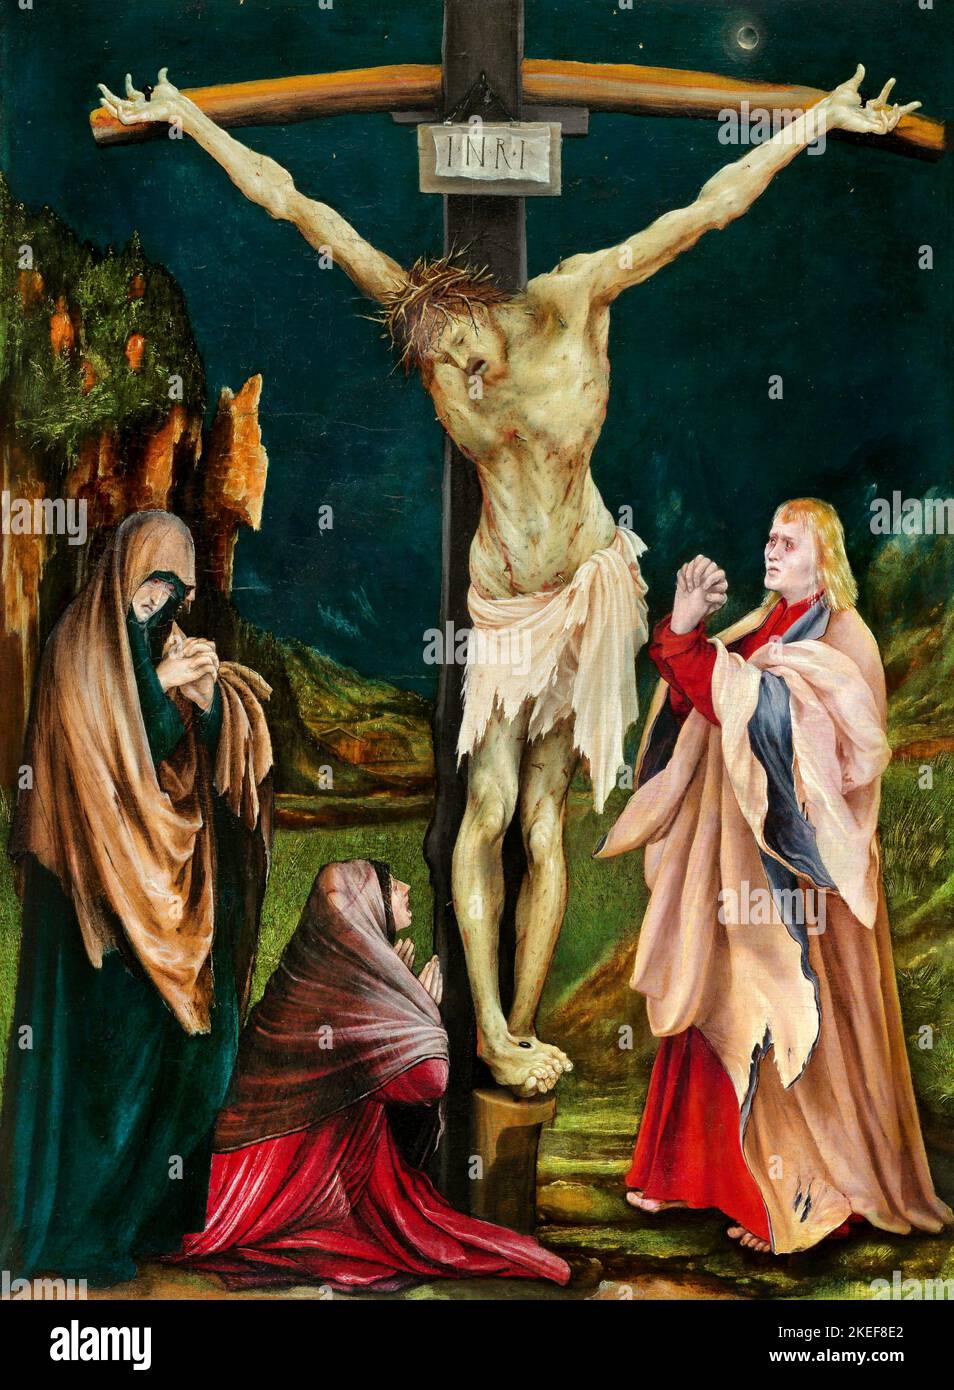 Mathis Gothart Grunewald, la petite Crucifixion, Circa 1511-1520, huile sur panneau, National Gallery of Art, Washington, D.C., États-Unis. Banque D'Images